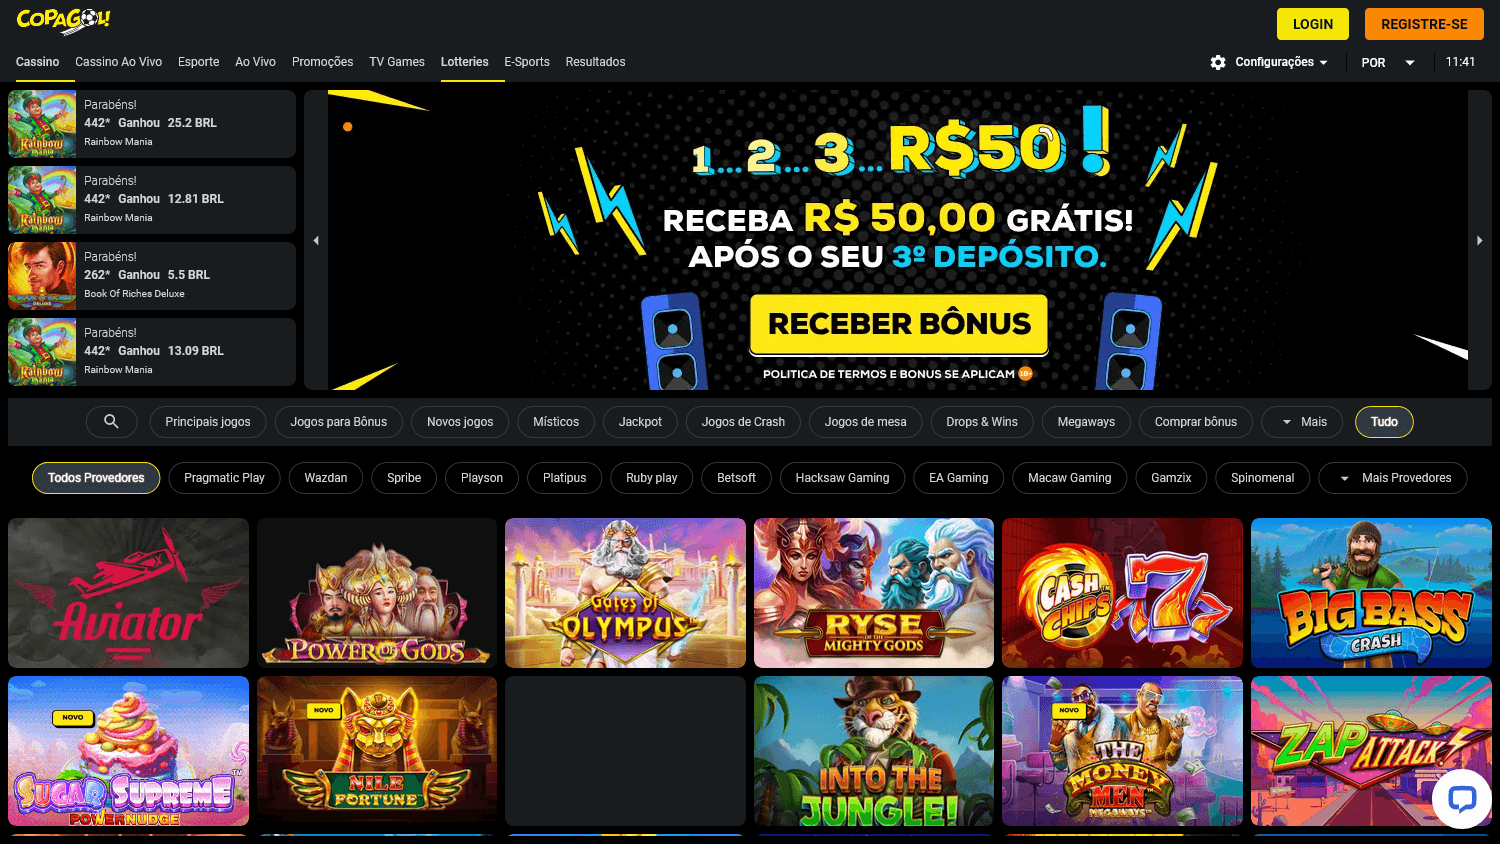 copagolbet_casino_homepage_desktop